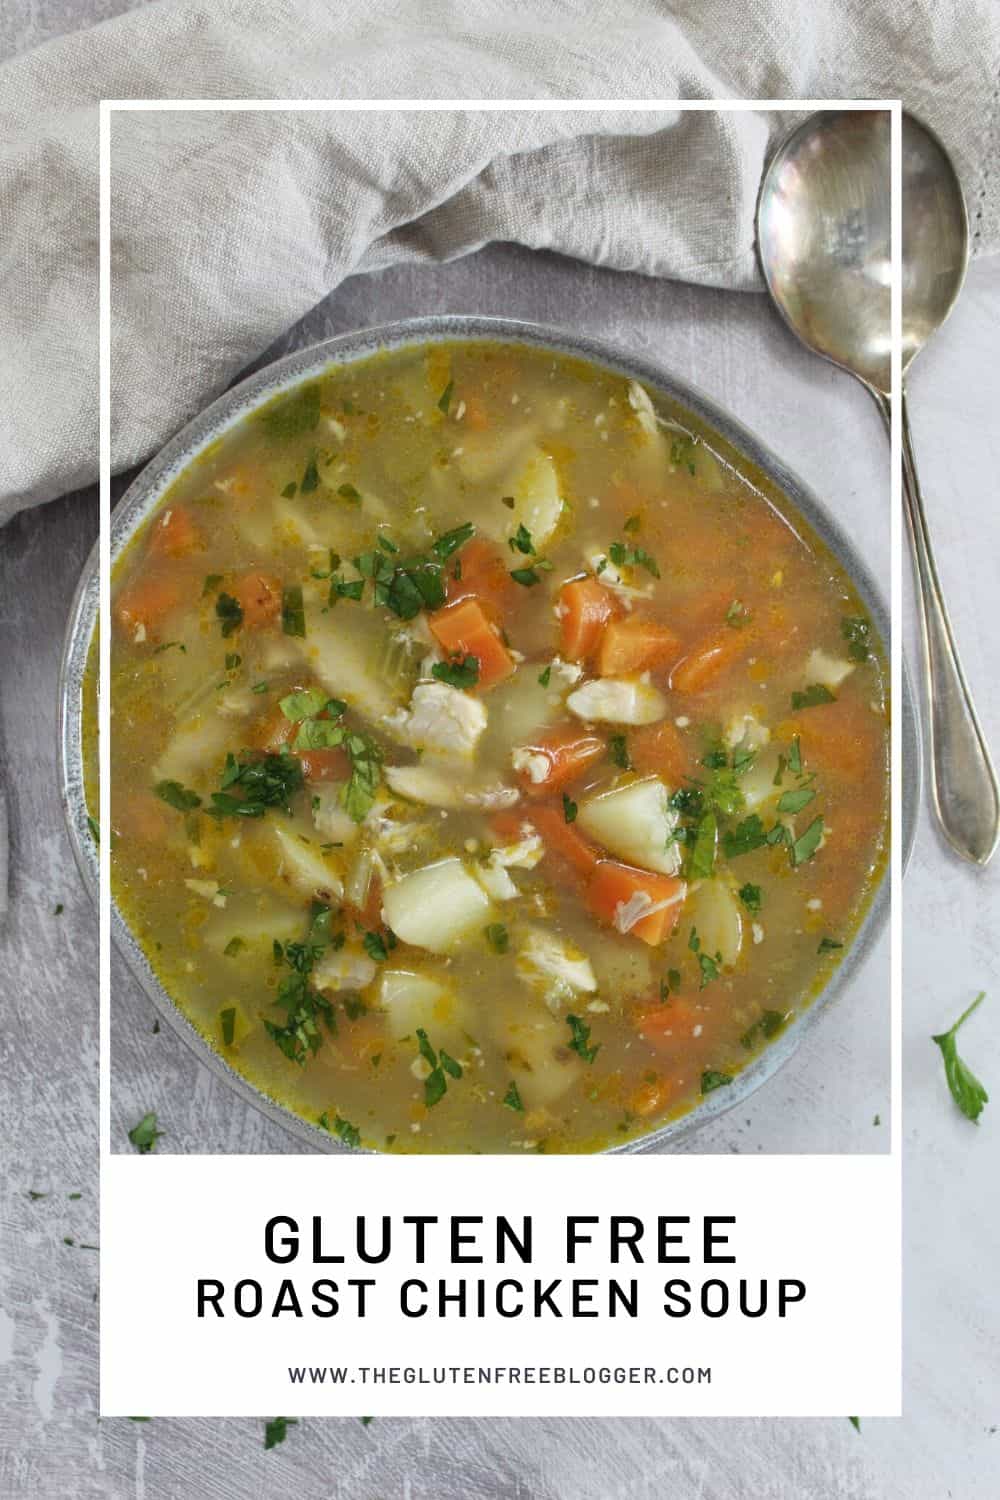 https://www.theglutenfreeblogger.com/wp-content/uploads/2020/03/gluten-free-roast-chicken-soup-recipe-batch-cooking-freezer-meals-immune-boosting-dairy-free.jpg